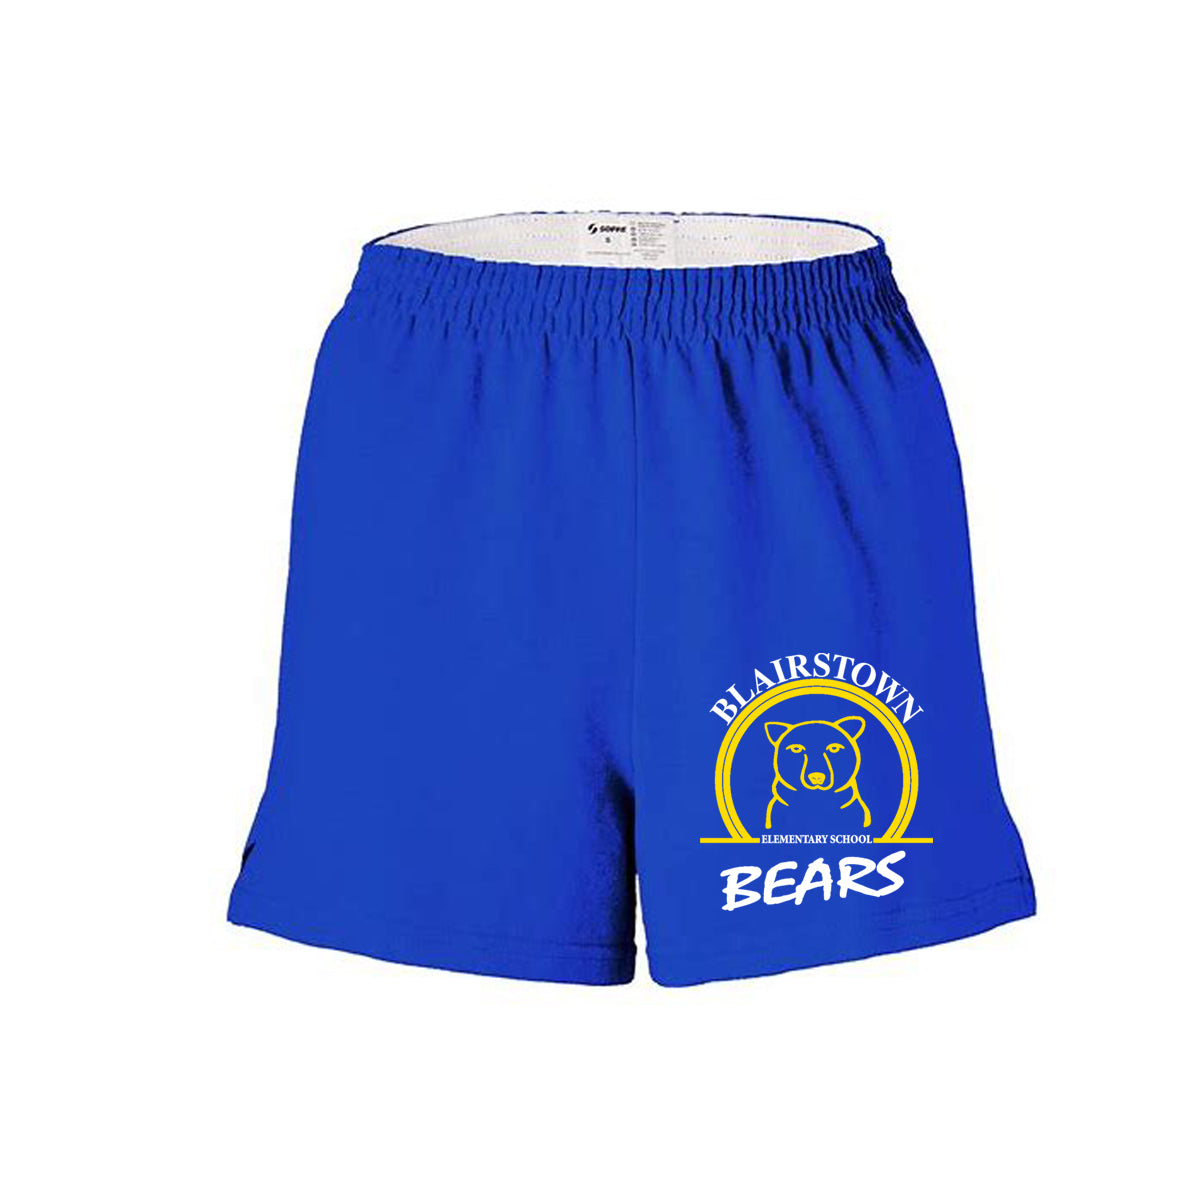 Blairstown Bears Design 10 Girls Shorts